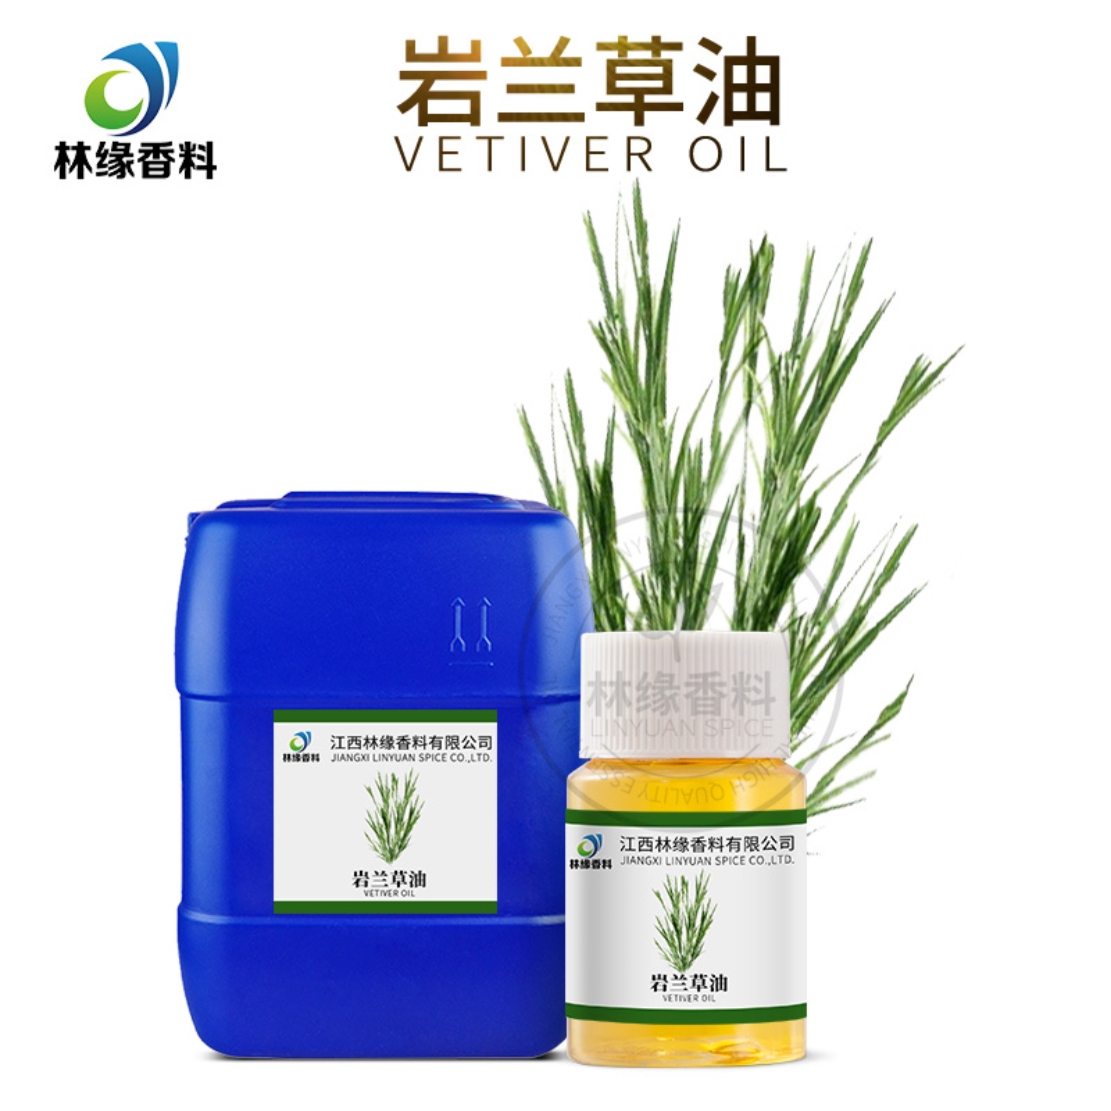 香根油（岩兰草油）,Vetivert oil